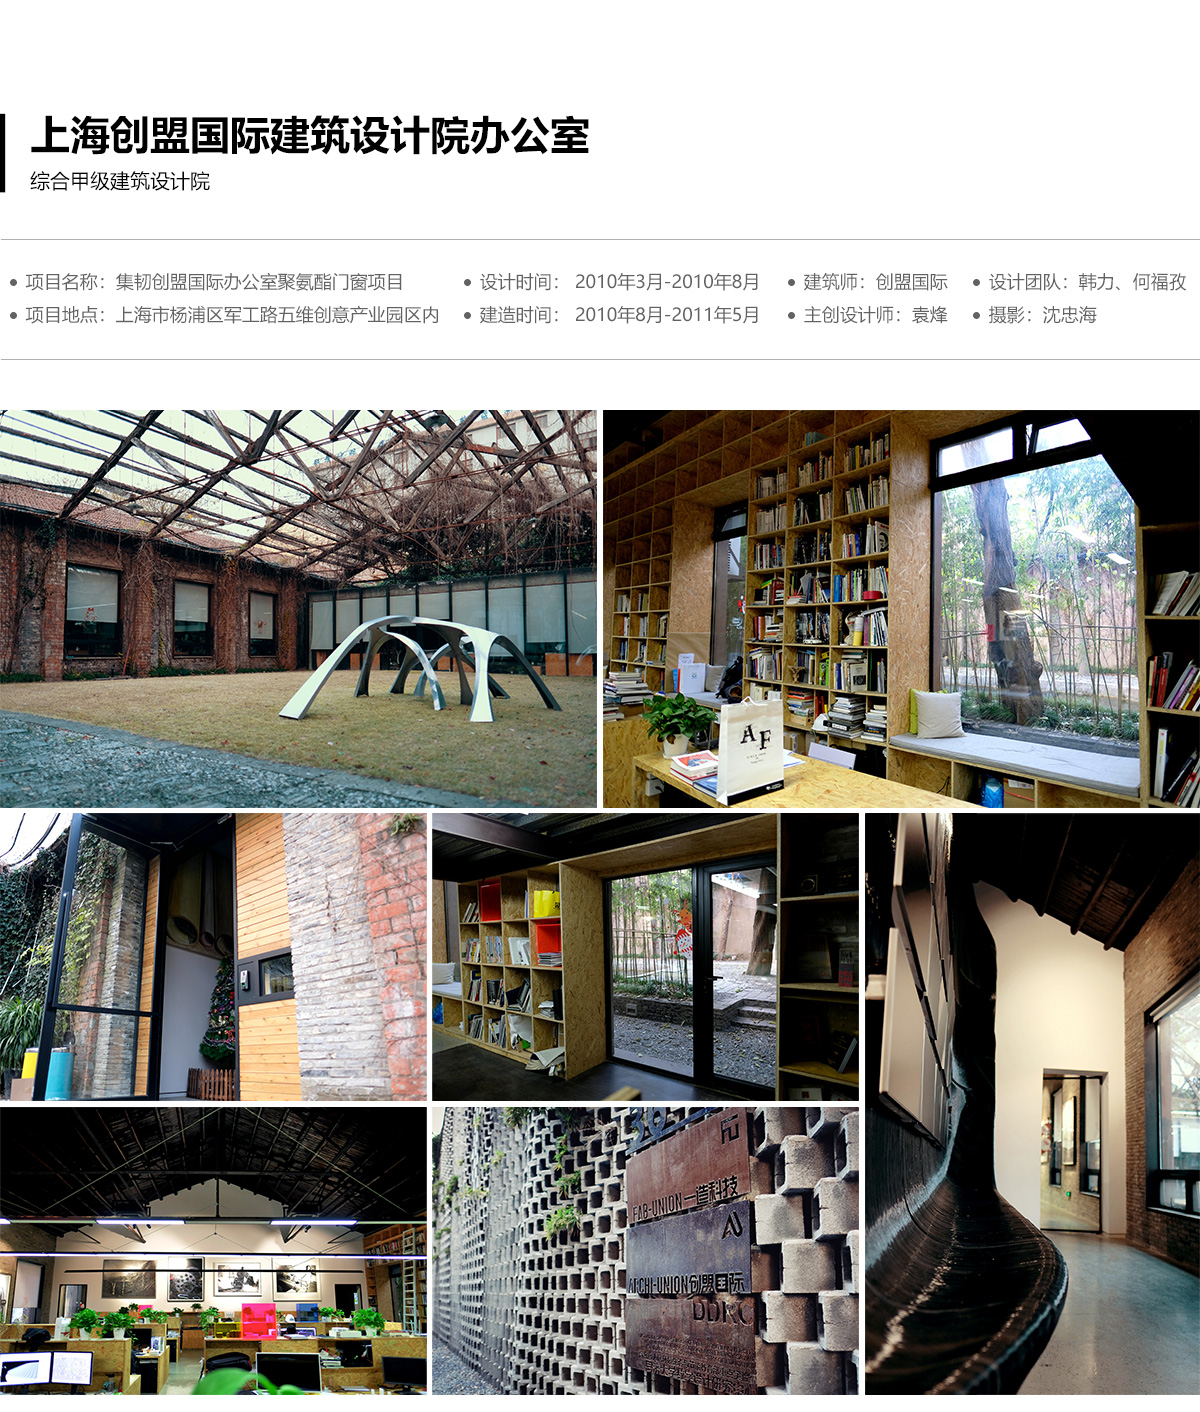 综合甲级建筑设计院上海创盟国际建筑设计院办公室_01.jpg